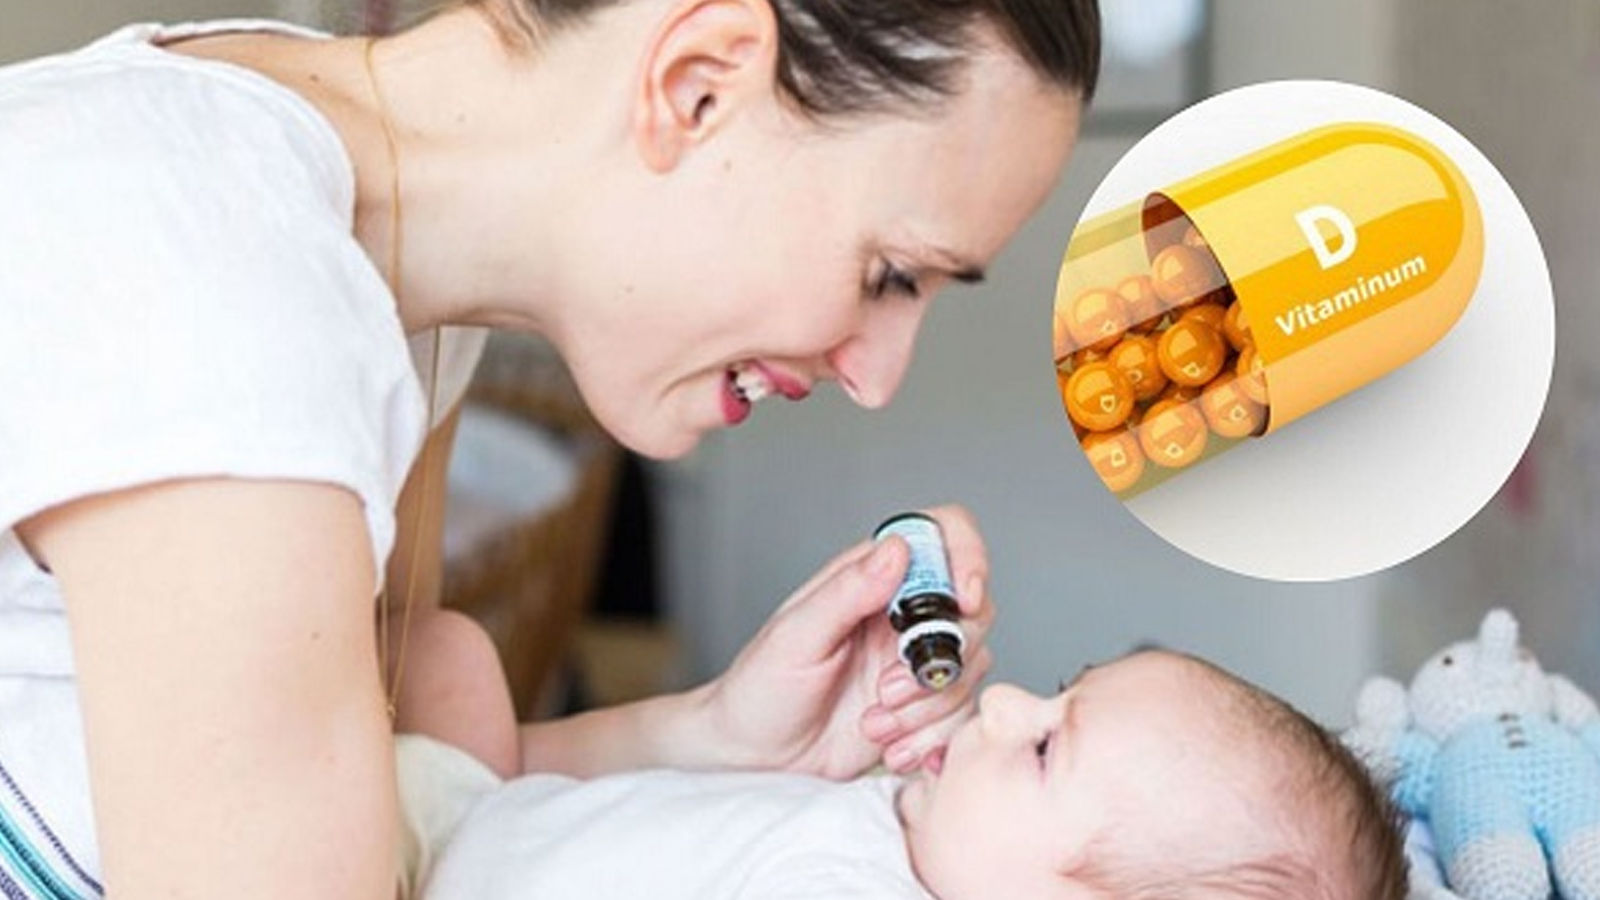 Cách sử dụng vitamin D3 giọt cho trẻ em đúng cách?
